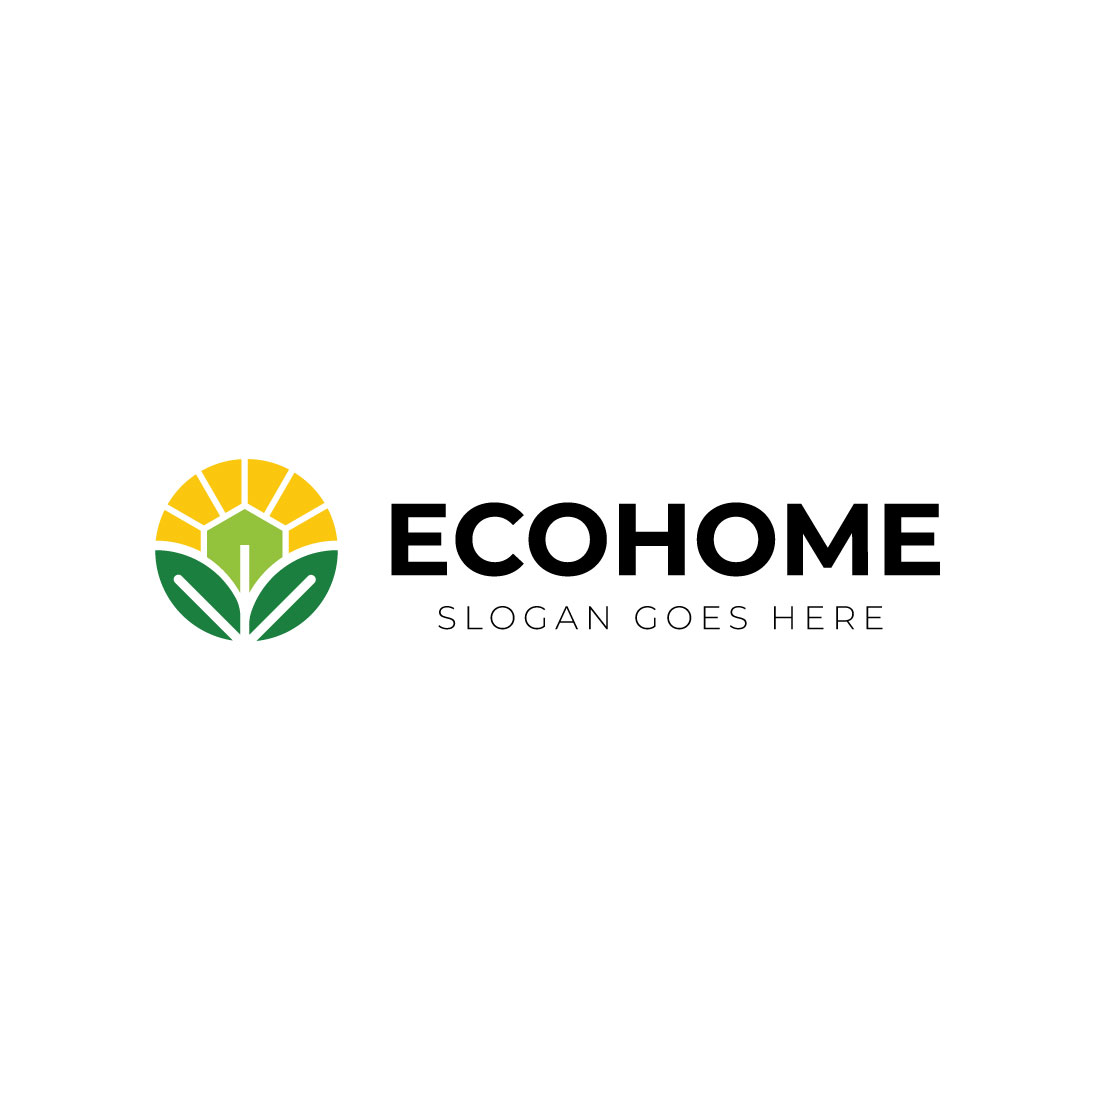 Eco Home Logo design preview image.